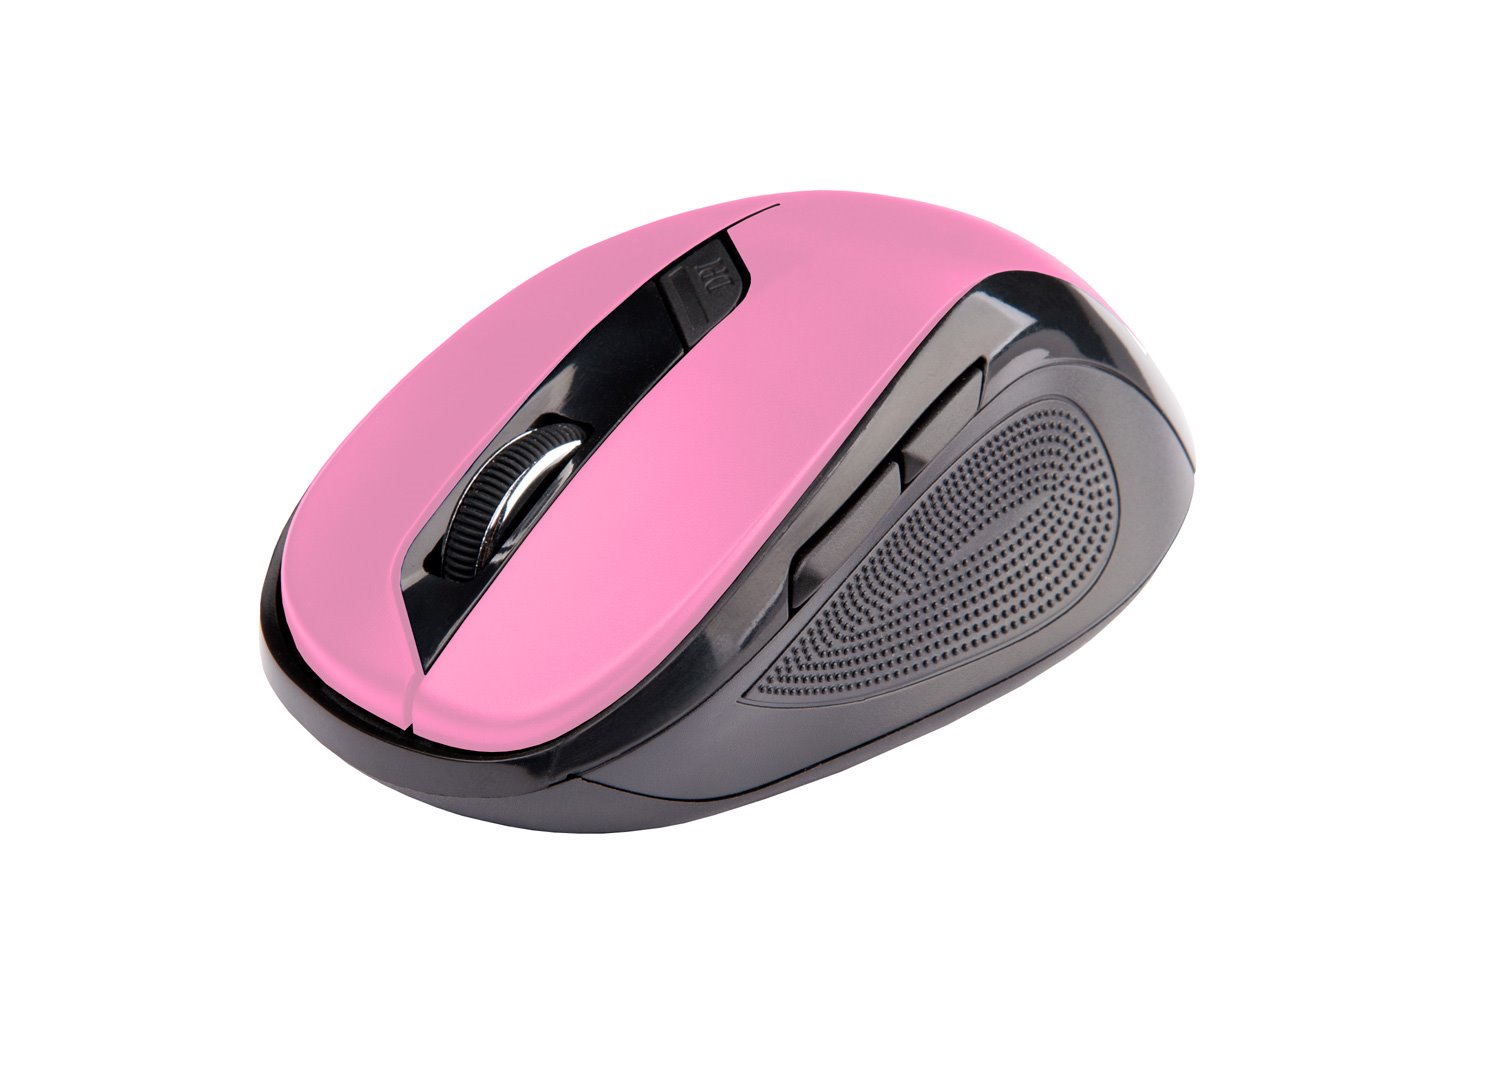 C-Tech Myš WLM-02P, černo-růžová, bezdrátová, 1600DPI, 6 tlačítek, USB nano receiver